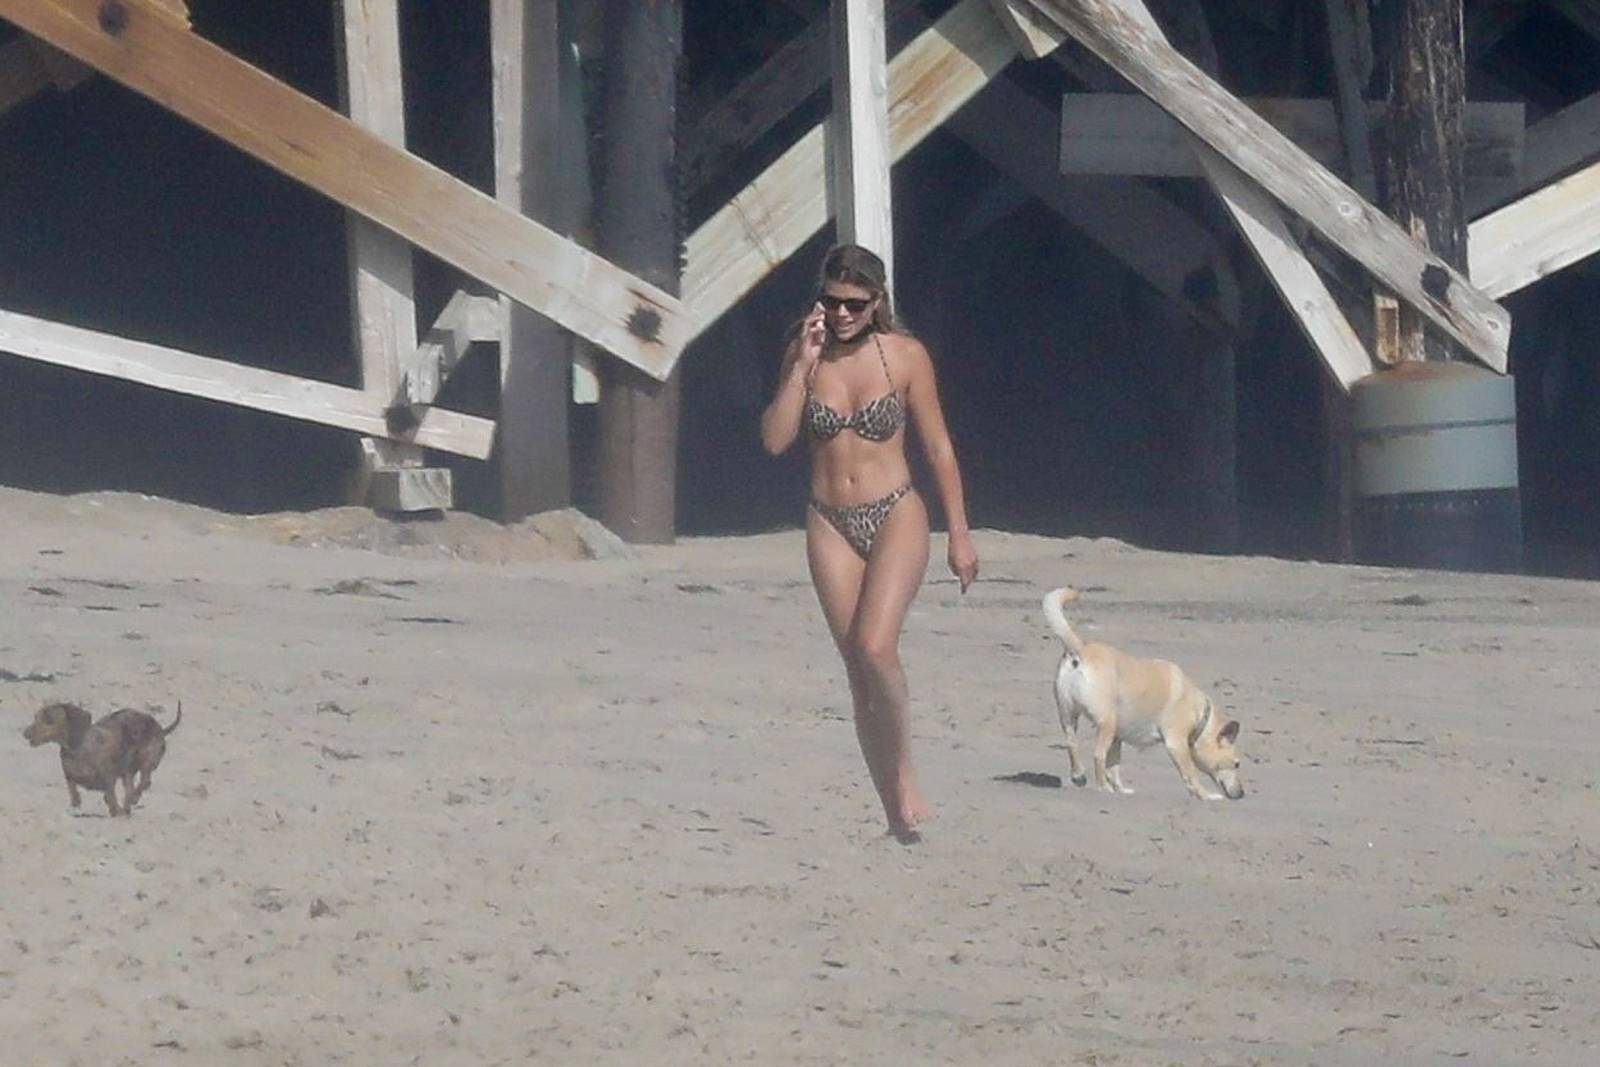 Sofia Richie 2020 : Sofia Richie - In bikini on a beach in Malibu -35. 